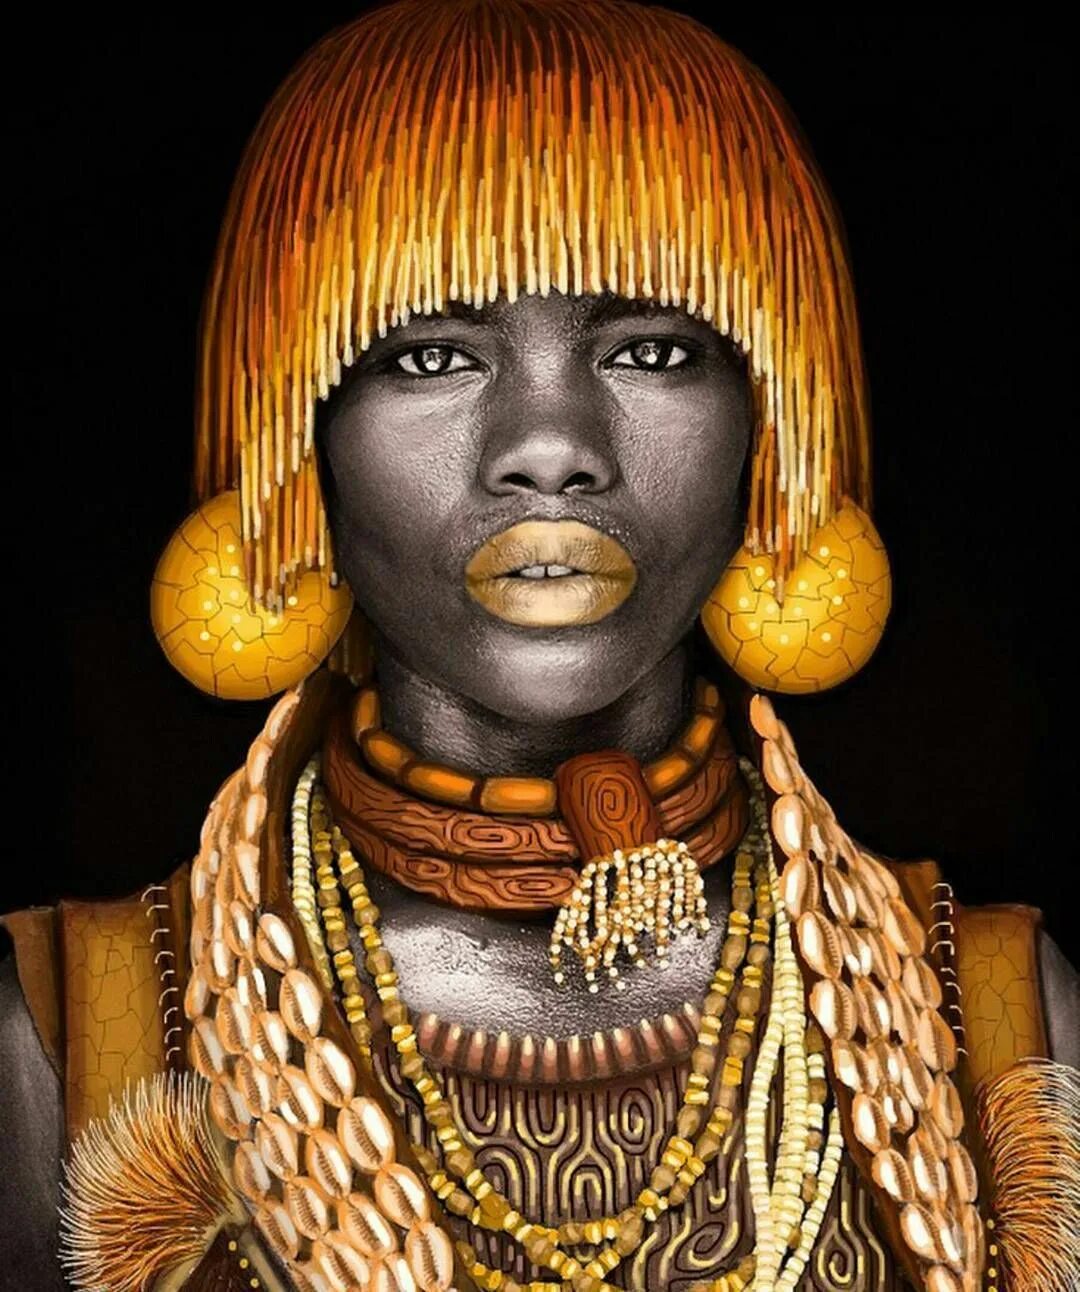 Африка белая женщина. Портрет африканки. Портрет африканца. Портрет африканской девушки. Африканская девушка картина.